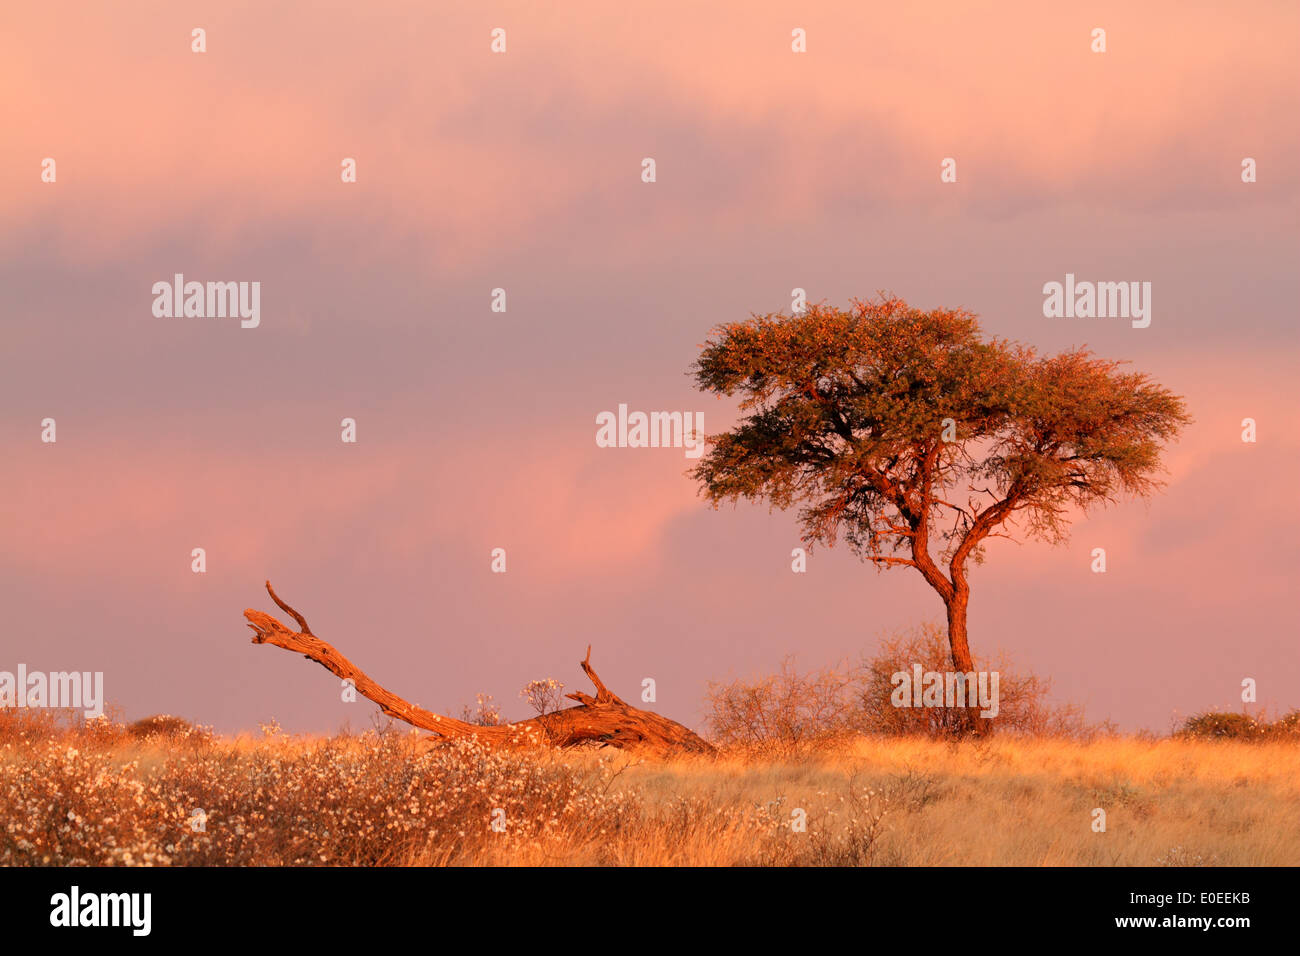 Paysage désertique avec un acacia et ciel nuageux au coucher du soleil, désert du Kalahari, Afrique du Sud Banque D'Images